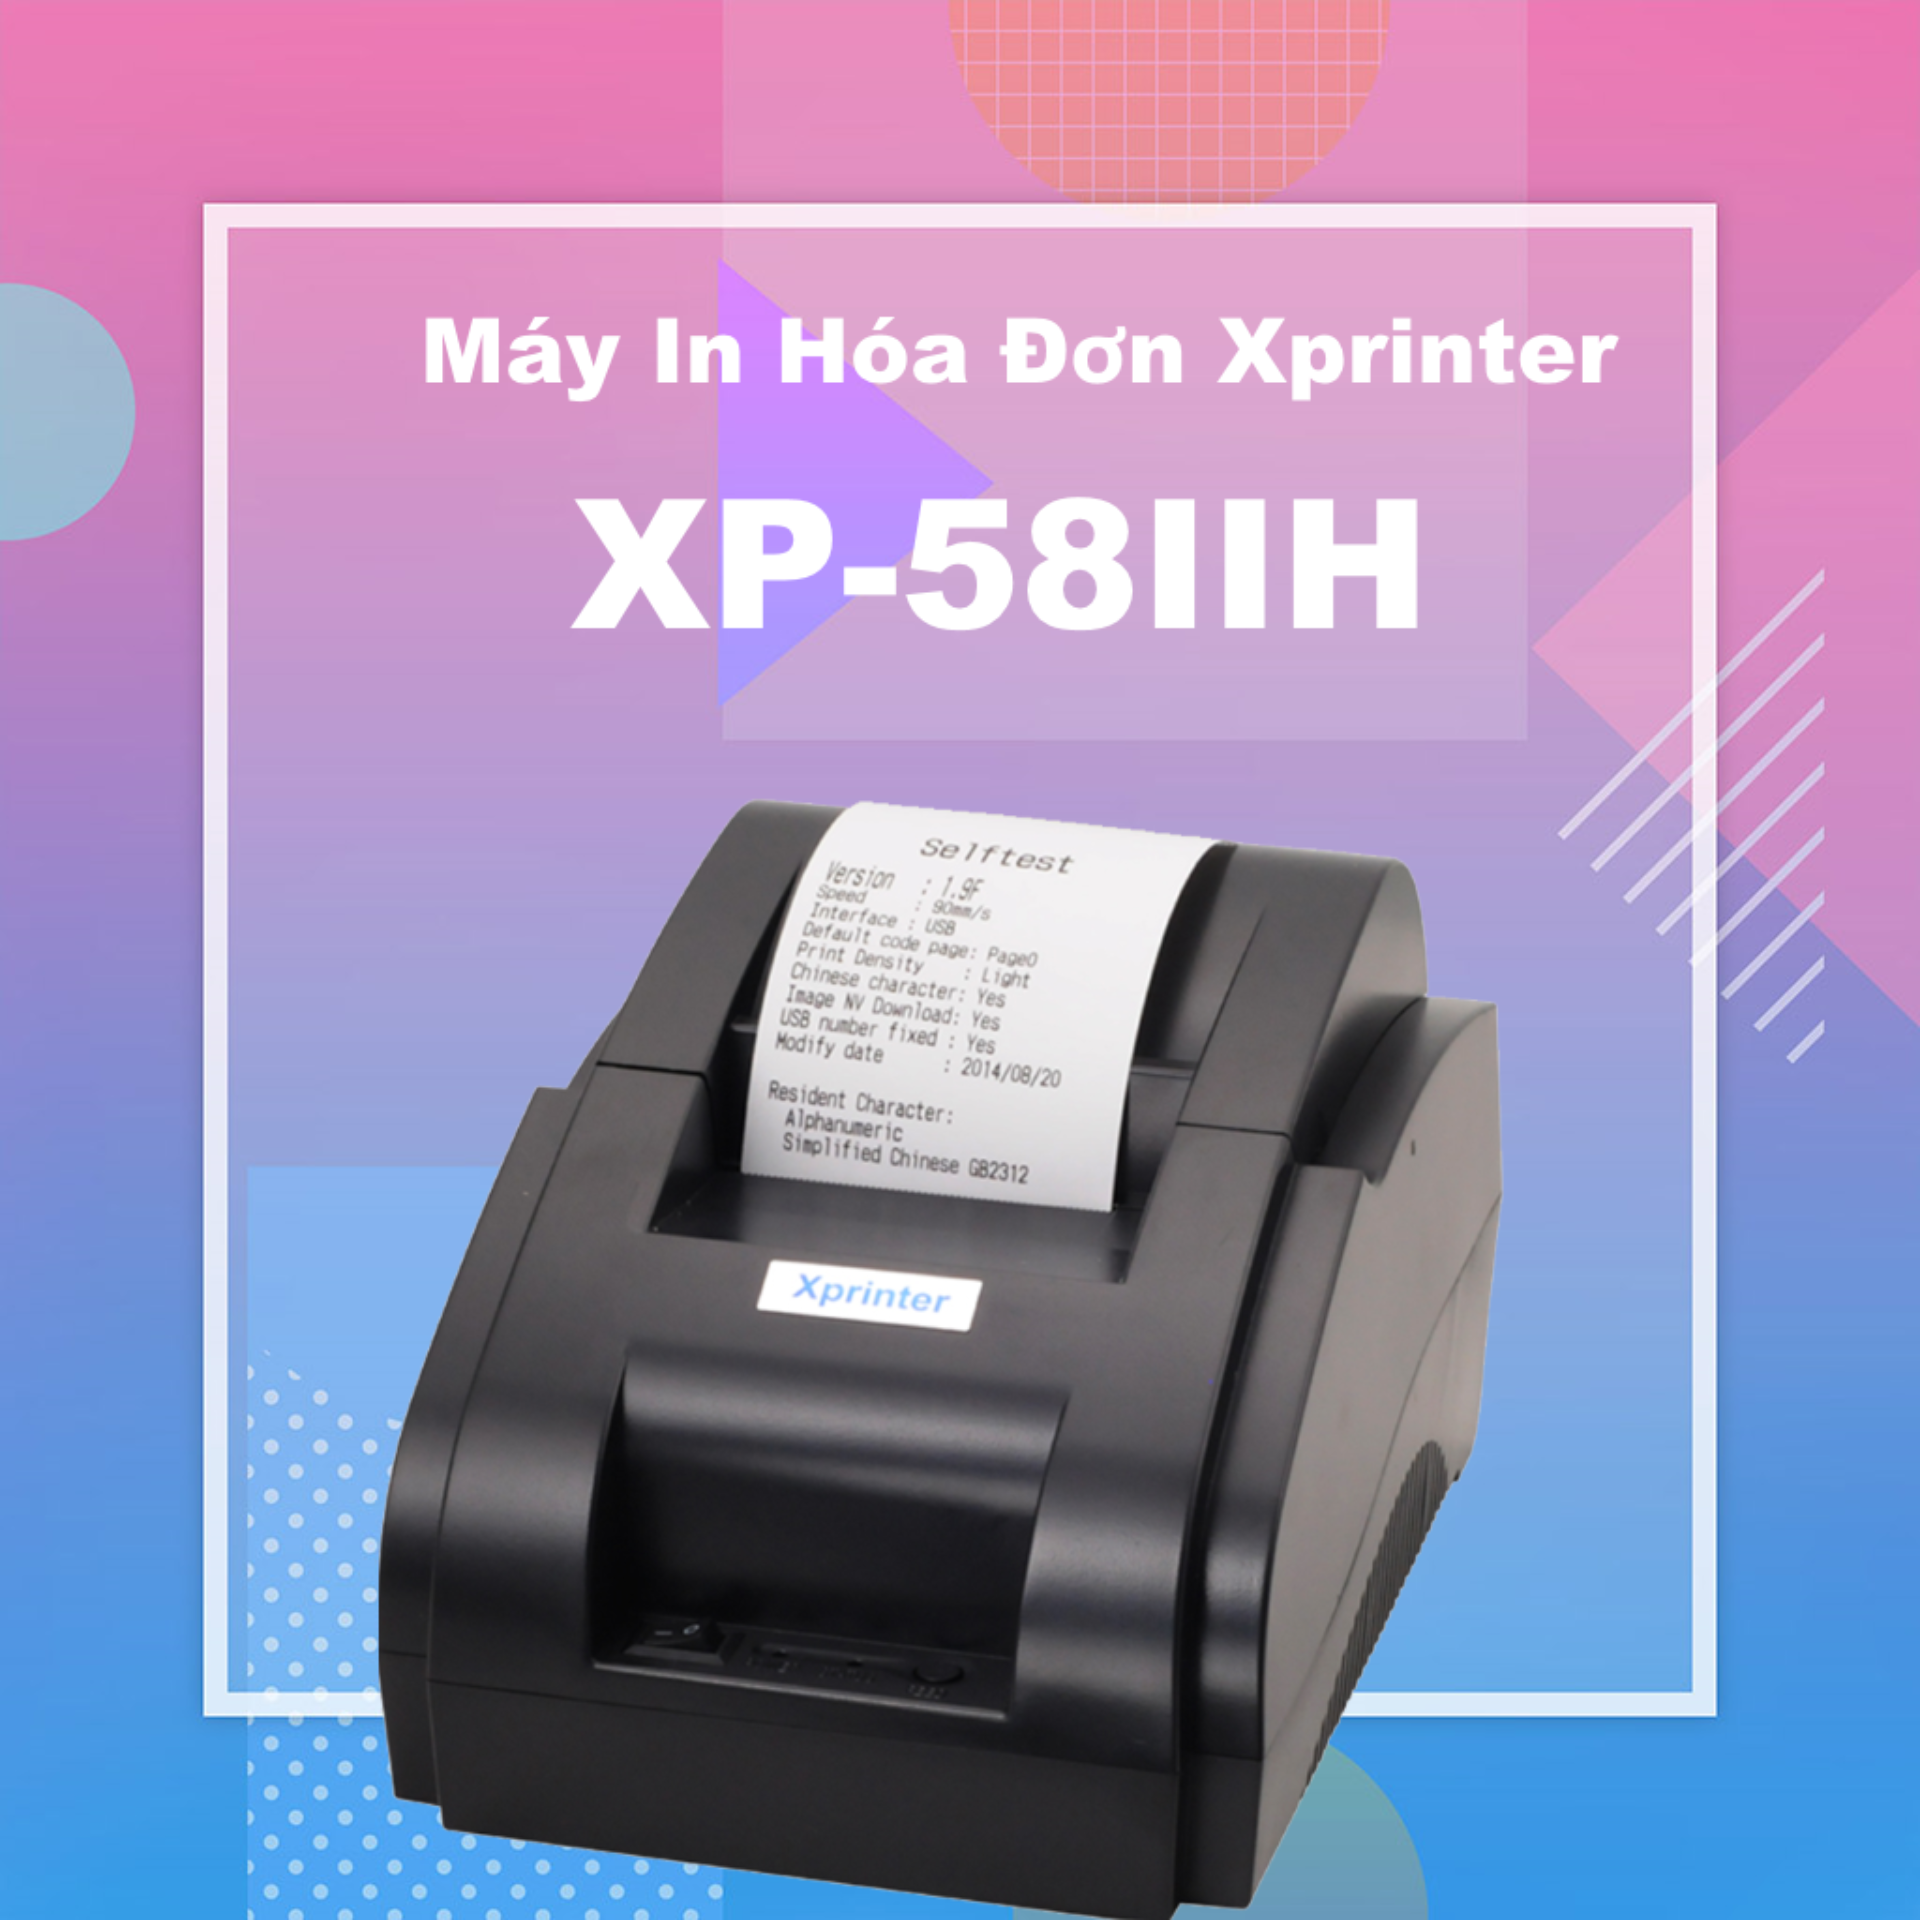 Máy In Hóa Đơn Xprinter 58IIH Khổ Giấy K58  cổng USB CHỈ KẾT NỐI MÁY TÍNH - TẶNG FREE phần mềm bán hàng 3 tháng đăng ký mới